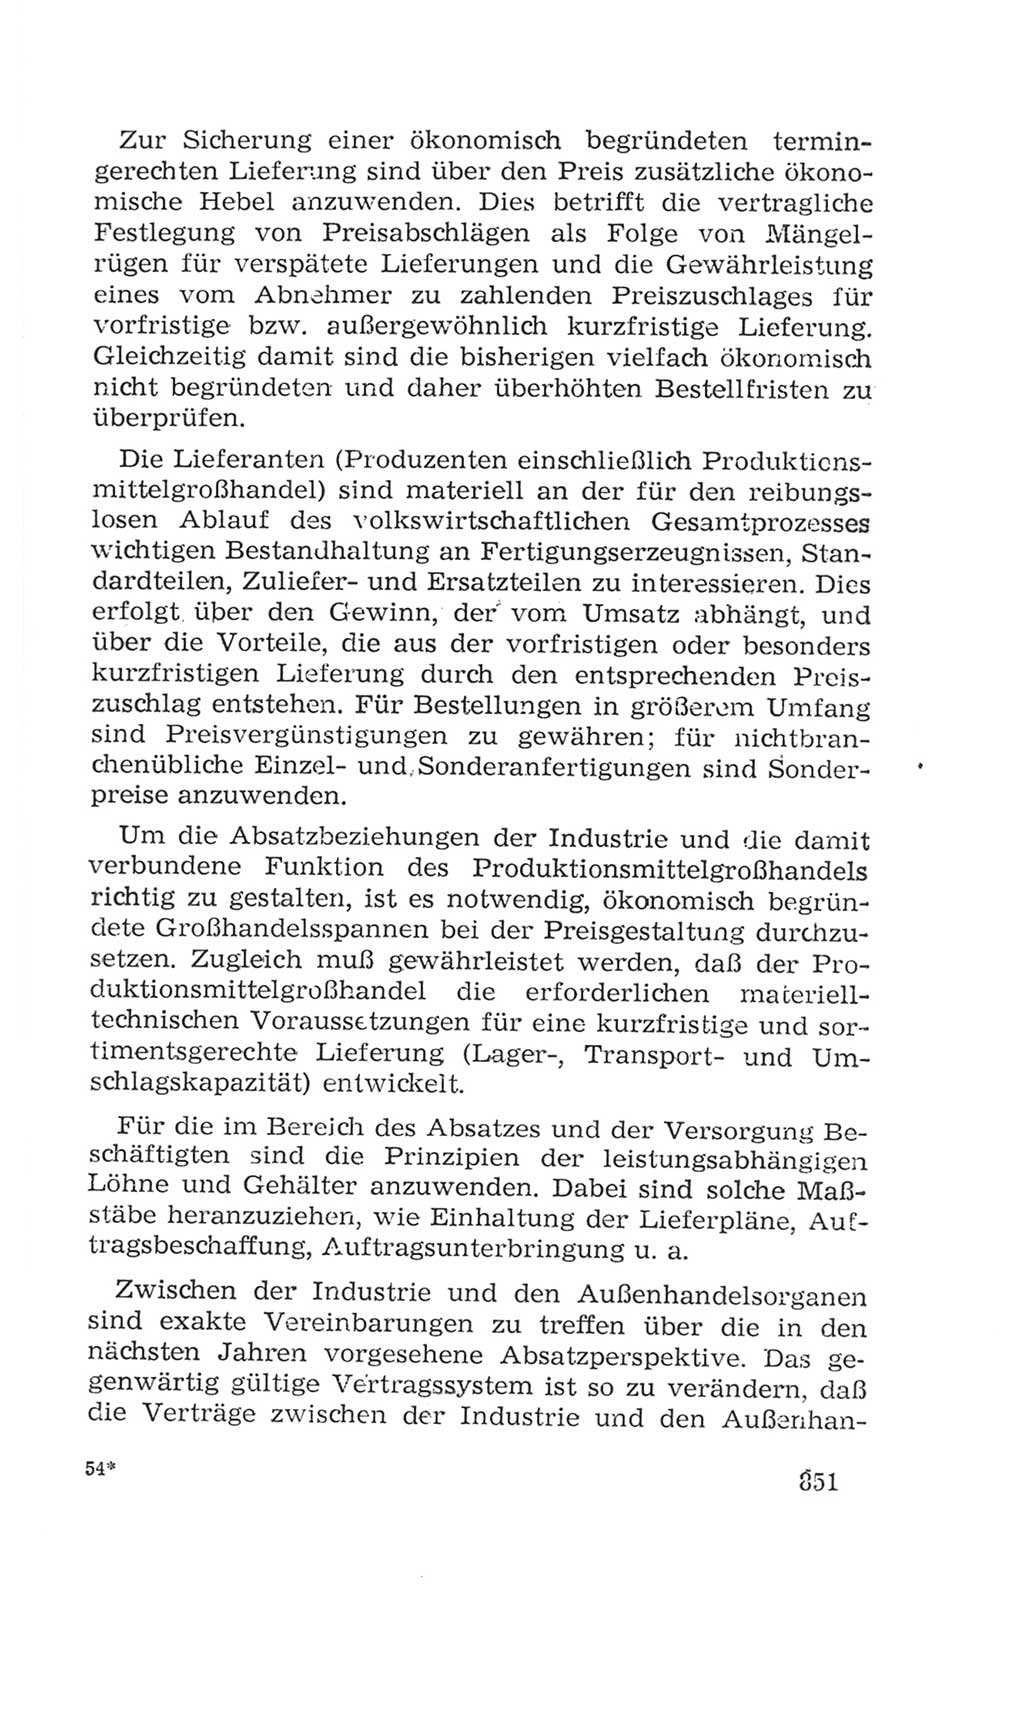 Volkskammer (VK) der Deutschen Demokratischen Republik (DDR), 4. Wahlperiode 1963-1967, Seite 851 (VK. DDR 4. WP. 1963-1967, S. 851)